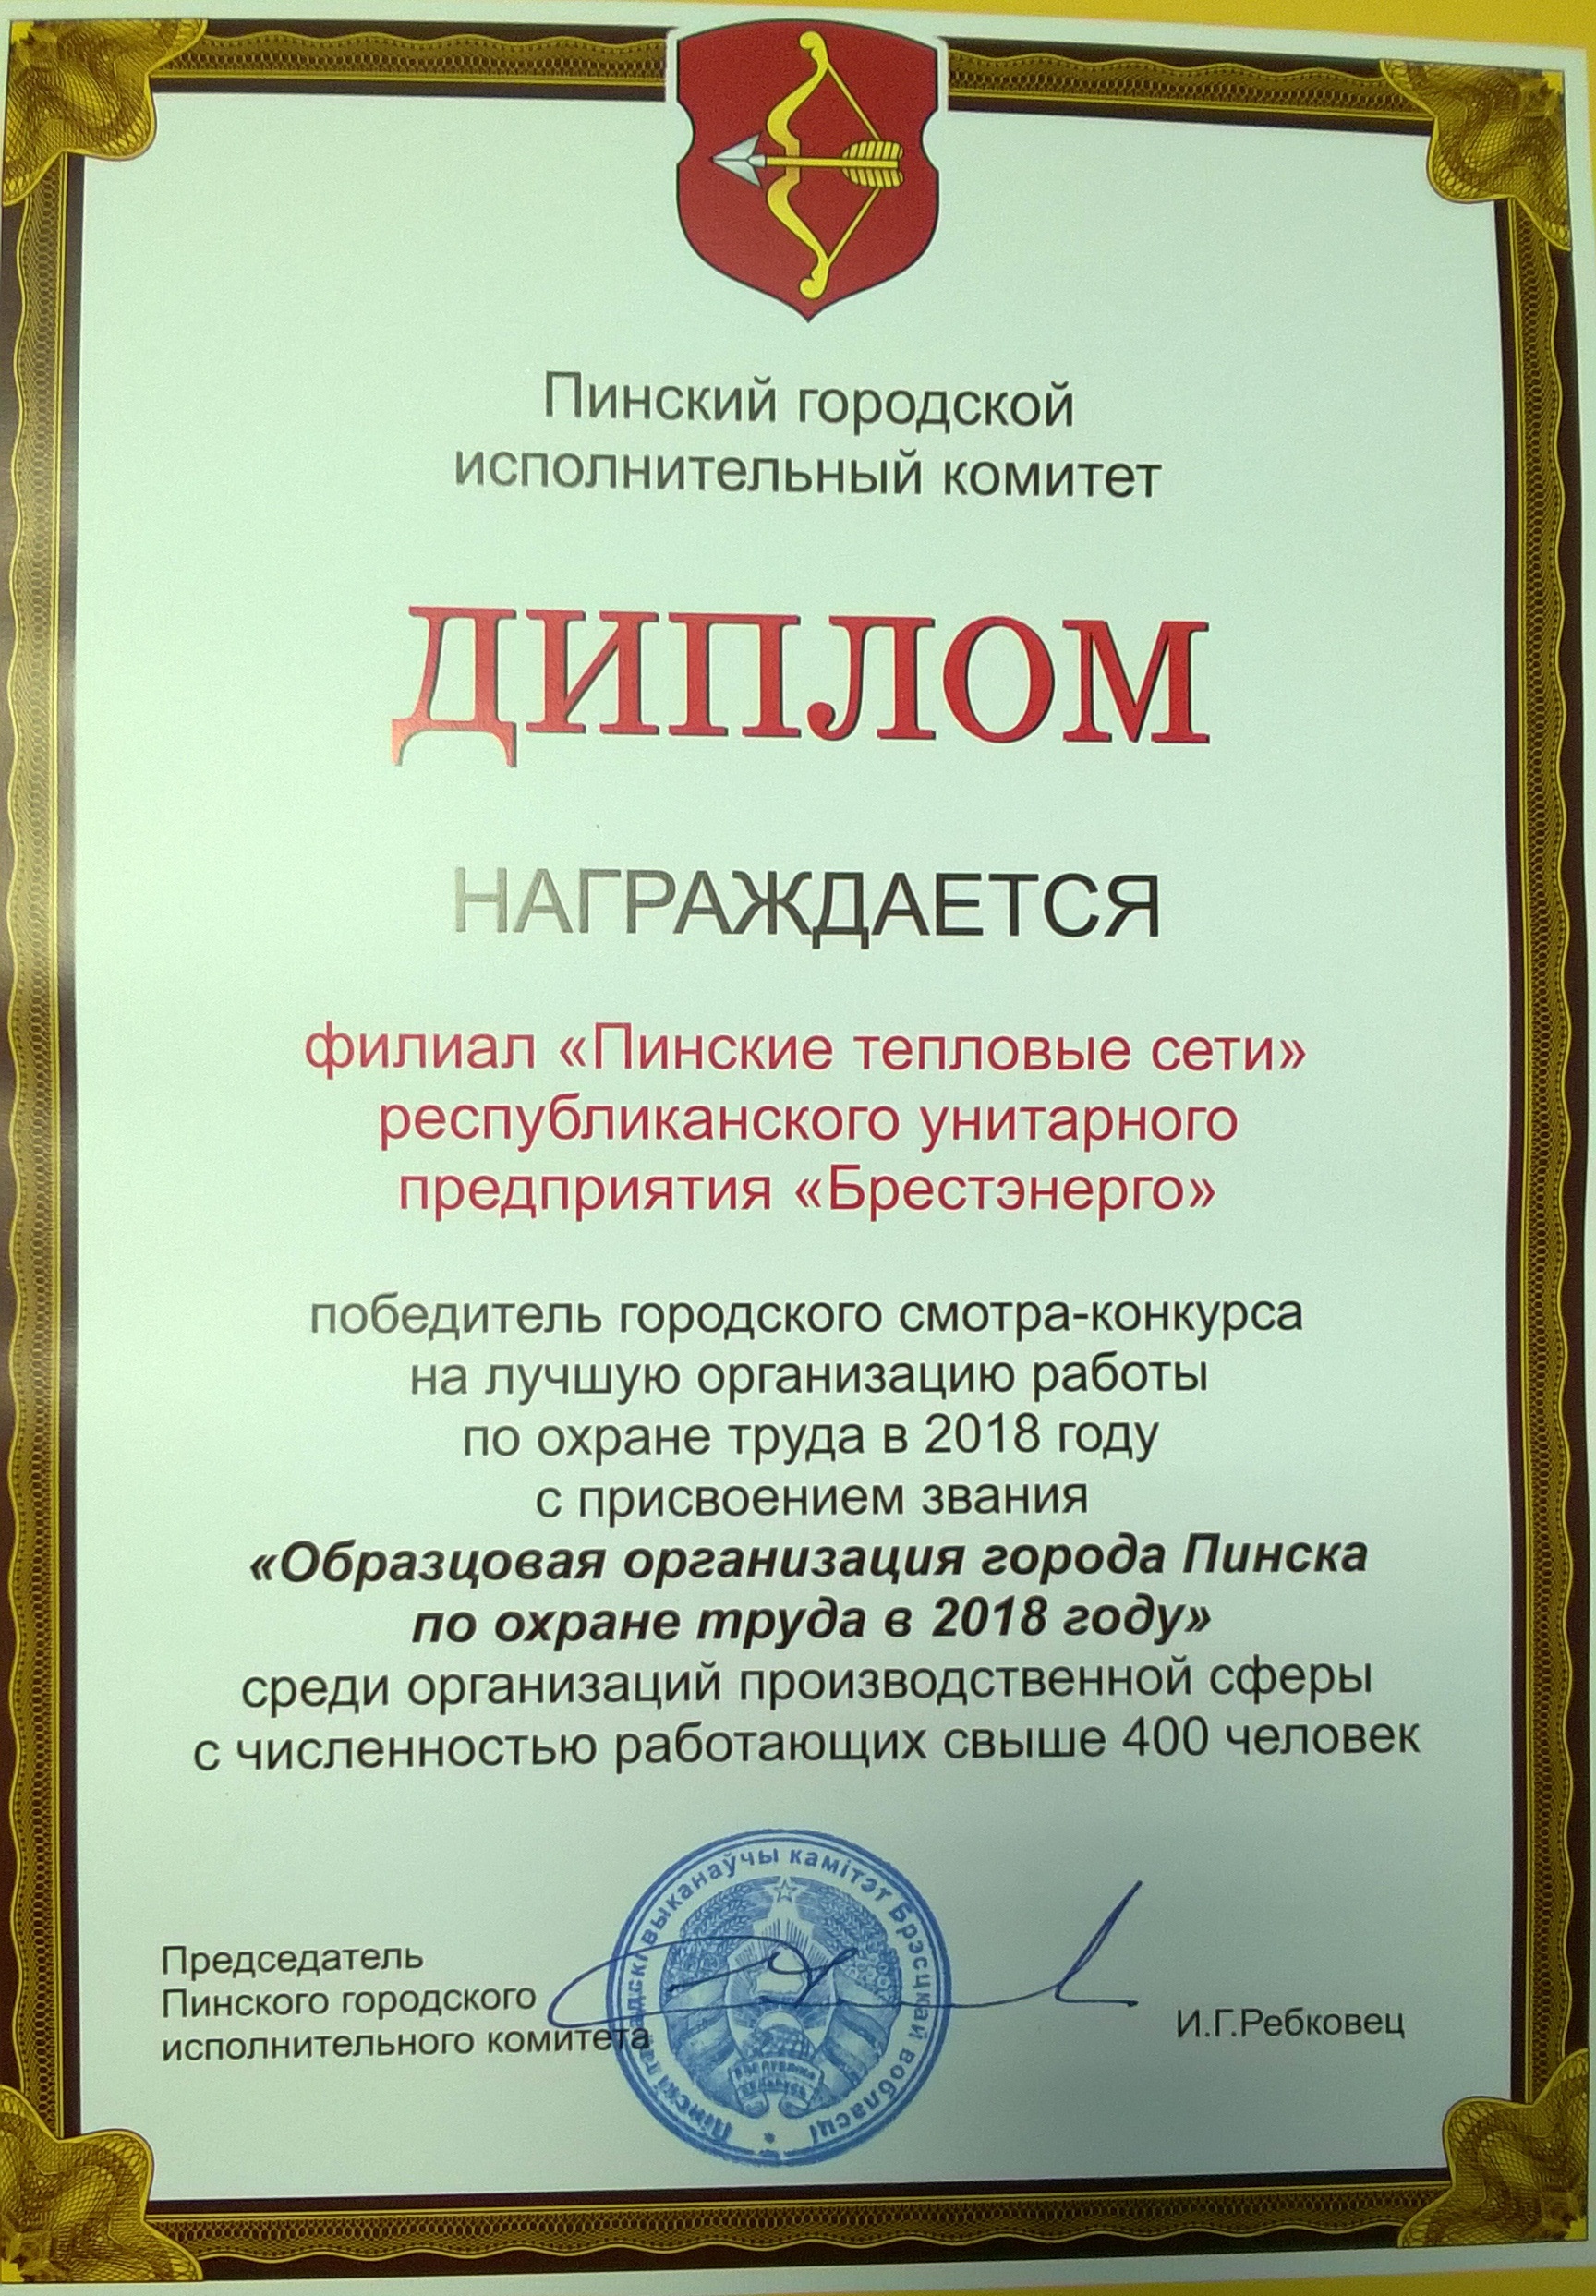 Предприятию Пинские тепловые сети присвоено звание "Образцовая организация города Пинска по охране труда в 2018 году".